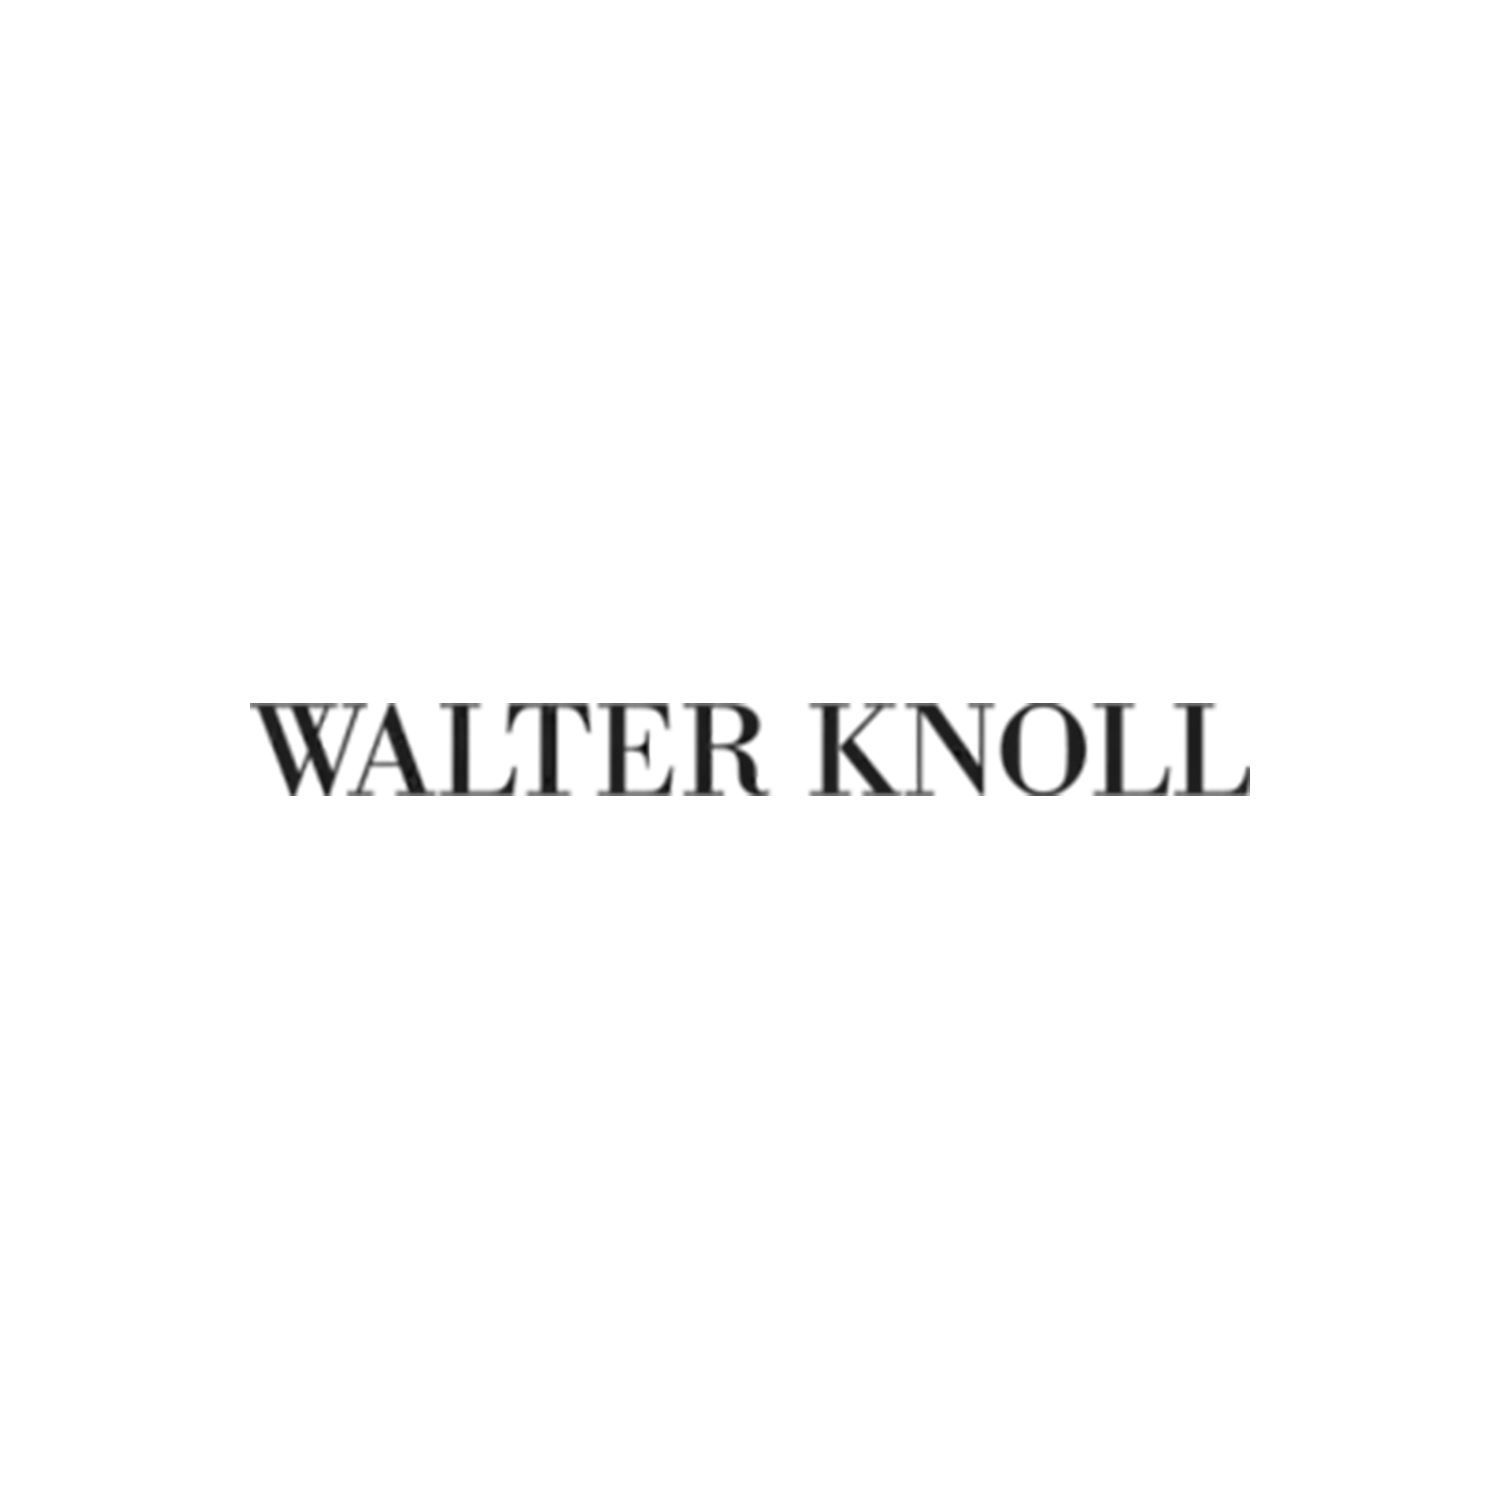 WALTER KNOLL